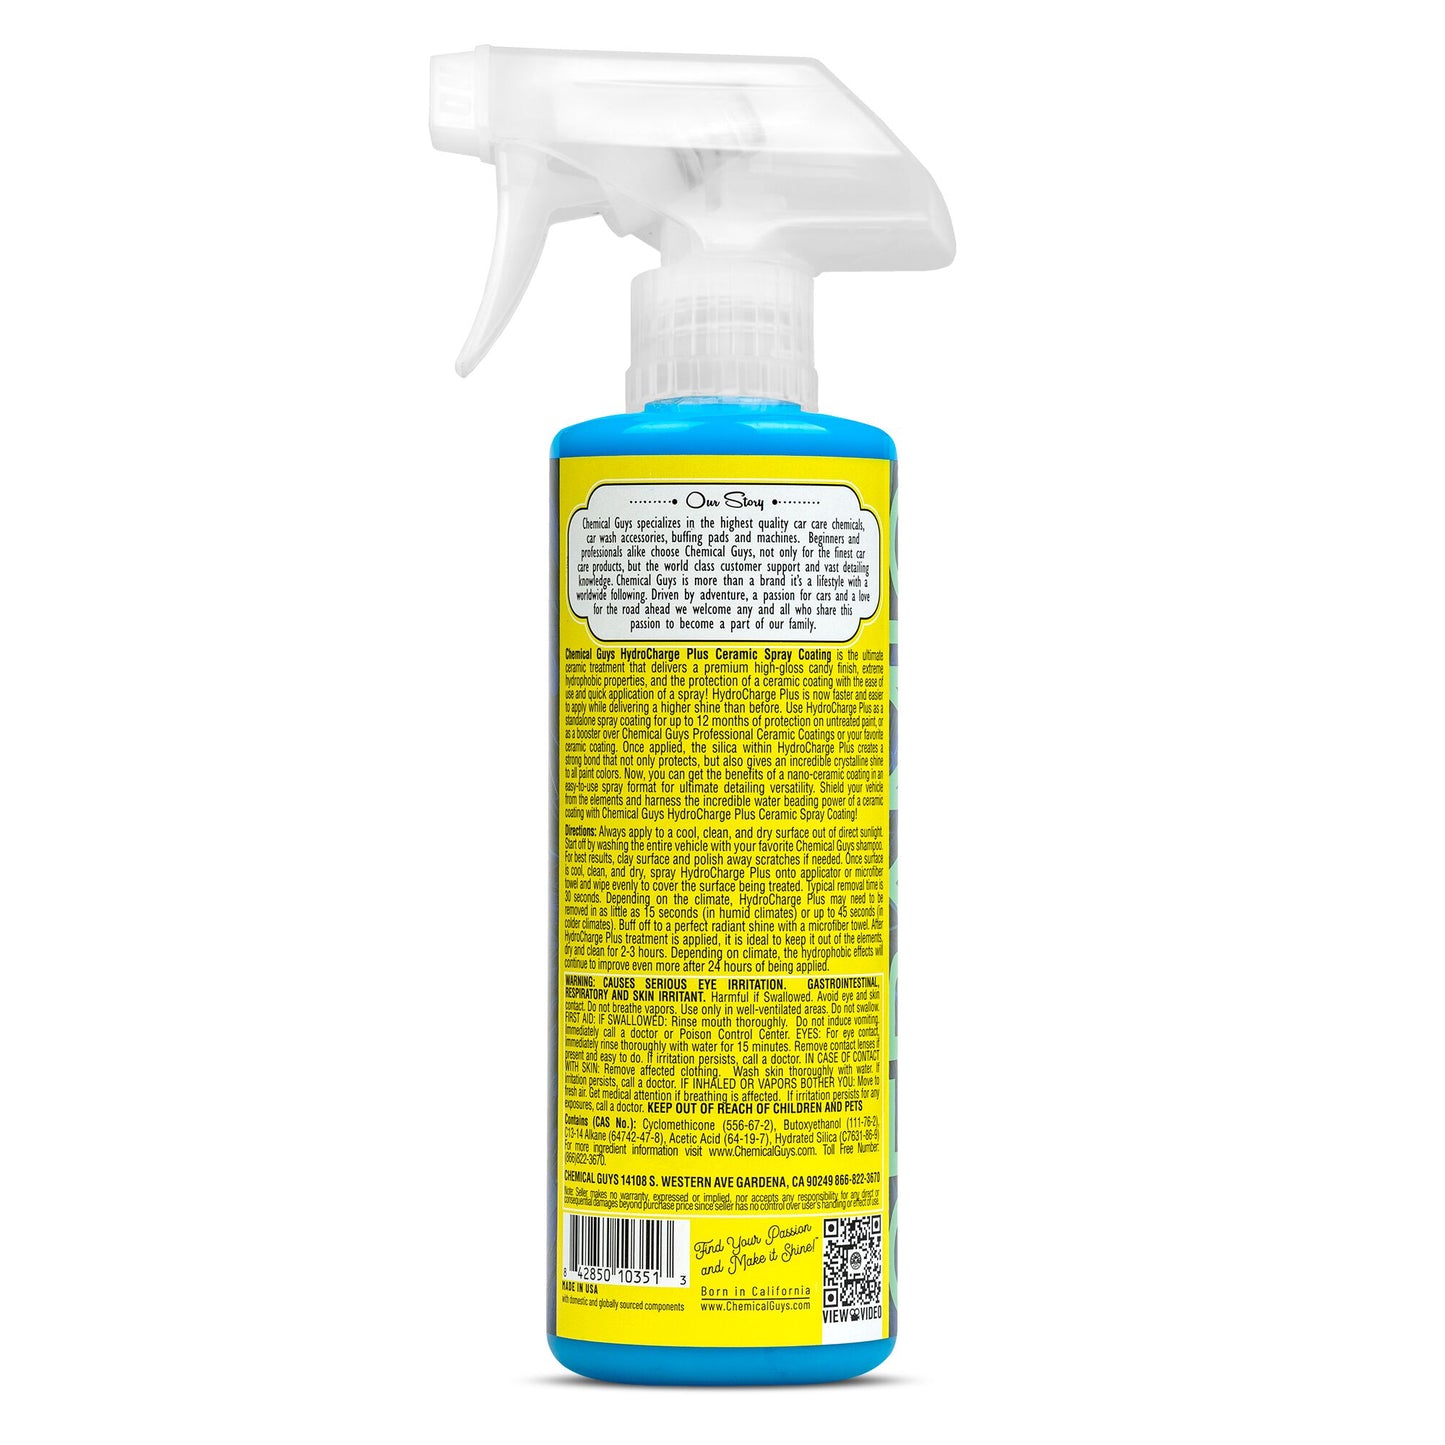 HydroCharge Plus High-Gloss Hydrophobic SiO2 Ceramic Spray Coating